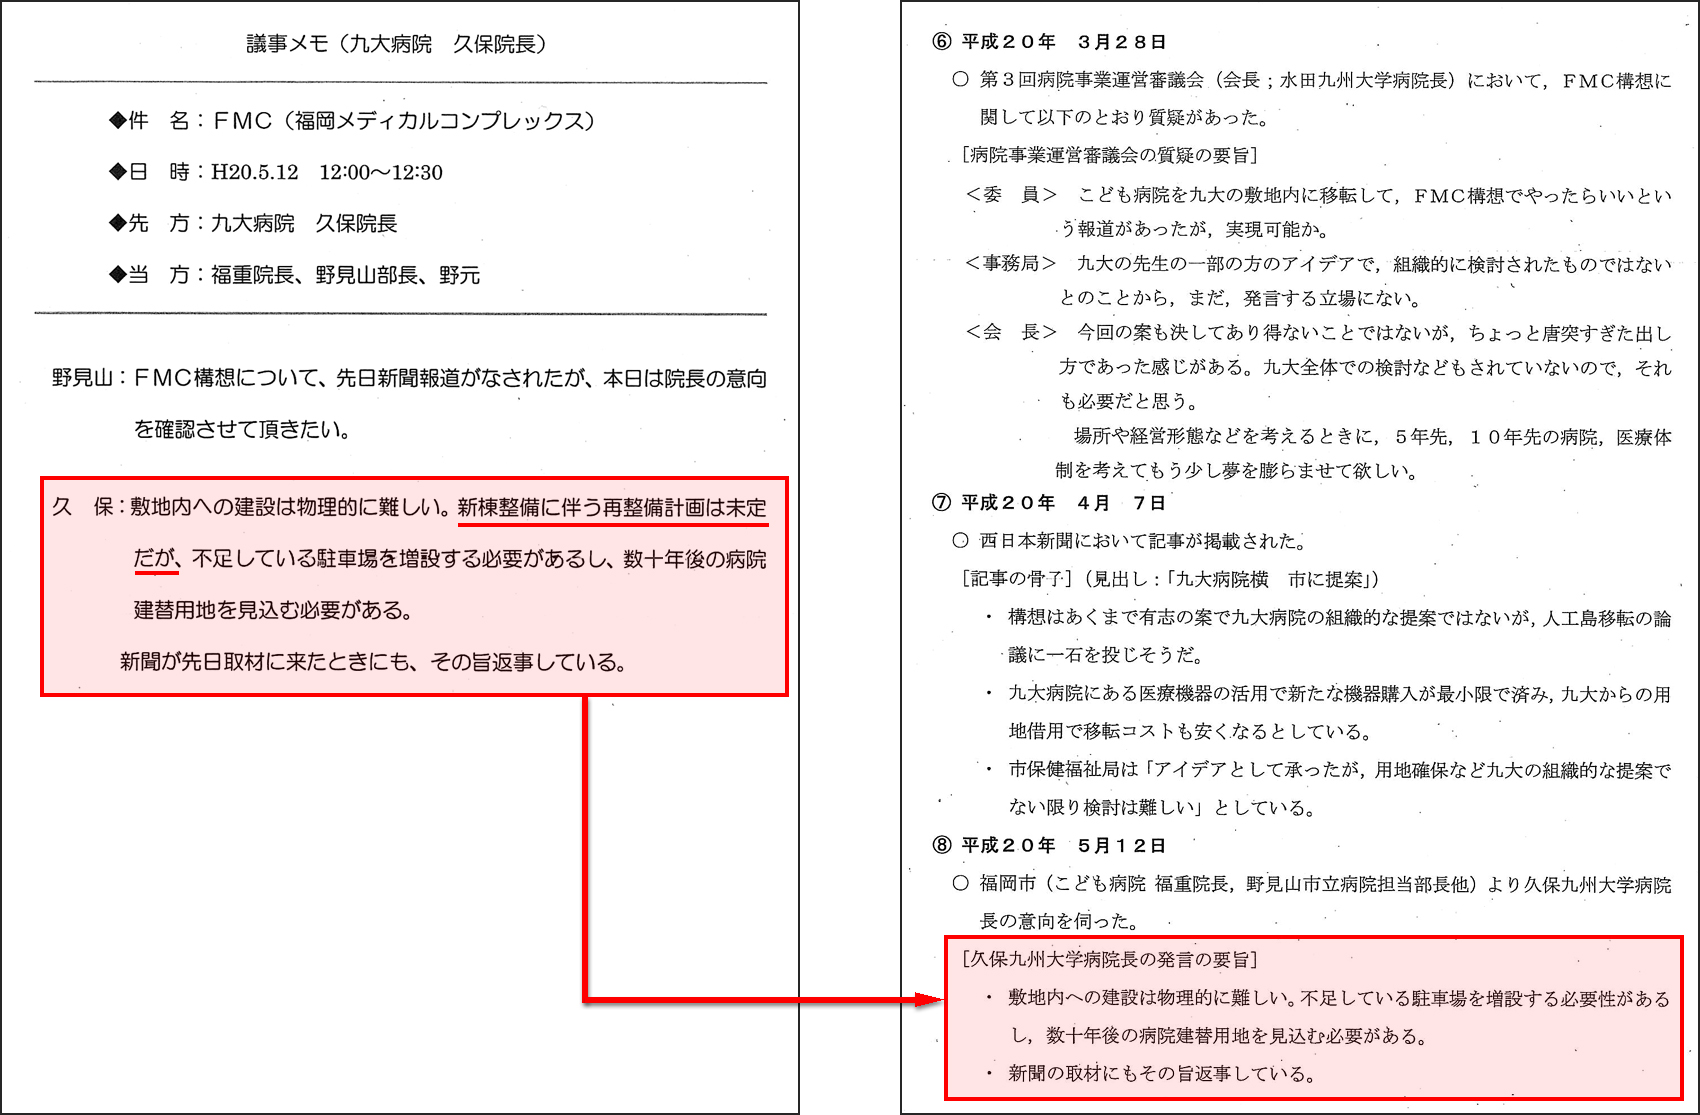 http://hunter-investigate.jp/news/2011/03/24/20110324_h01-01.jpg